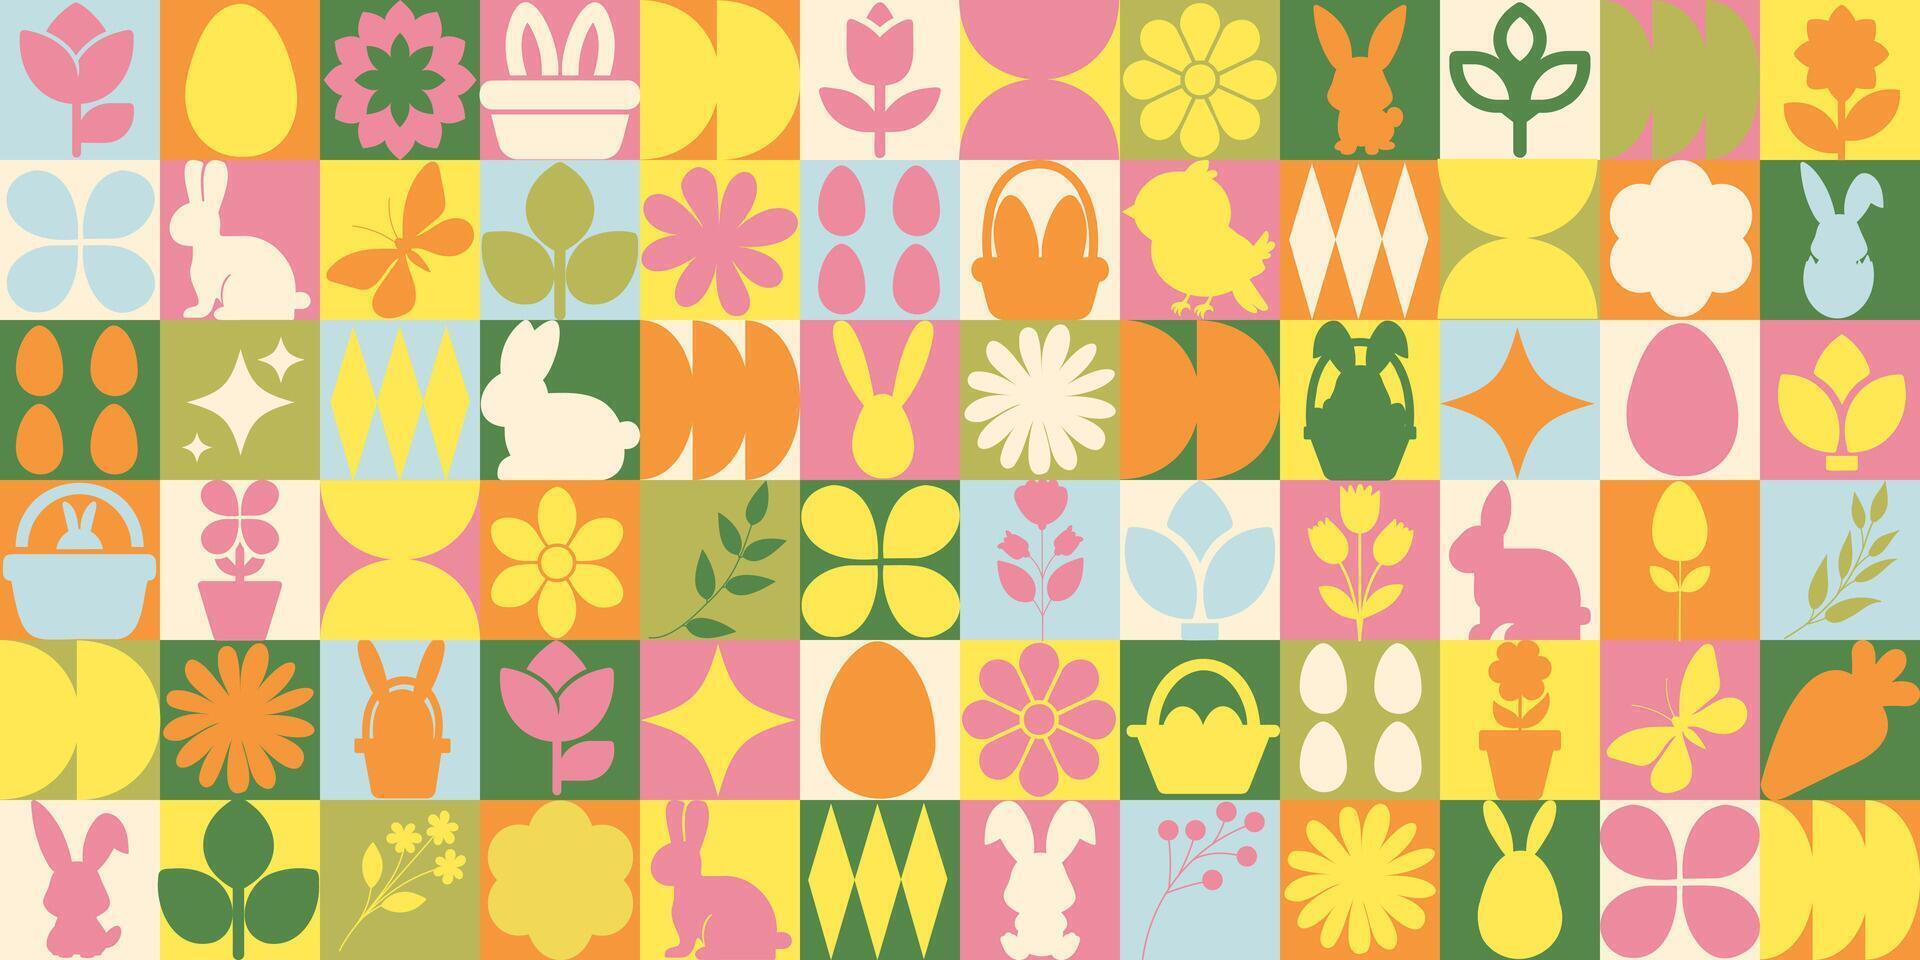 påsk ikoner element med geometrisk mönster. bauhaus stil. vektor platt design för affisch, kort, tapet, affisch, baner, förpackning. kanin, blomma, brud, ägg, korg